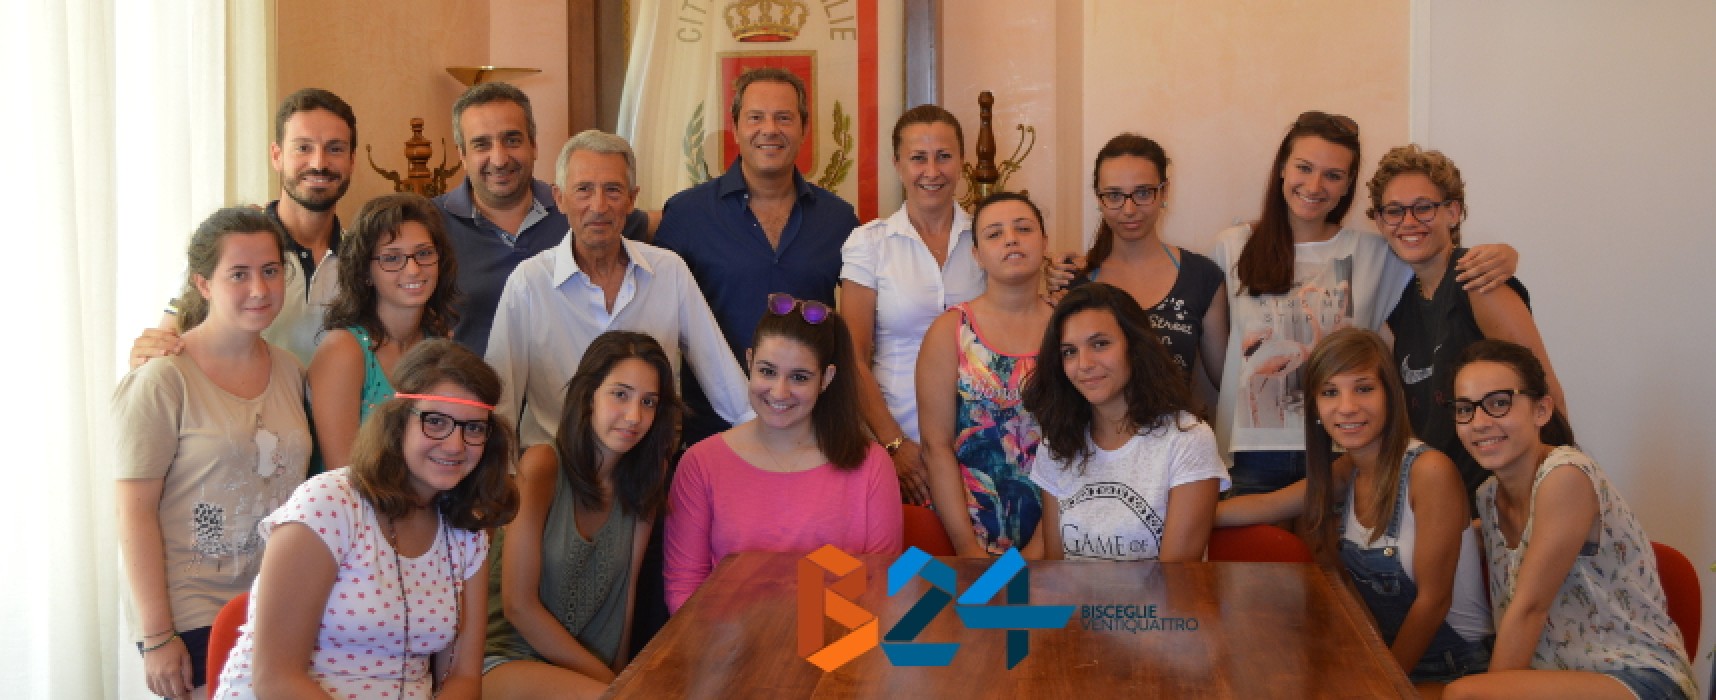 Pro Loco, sindaco Spina e assessore Sasso incontrano le ragazze della “Summer School” / FOTO